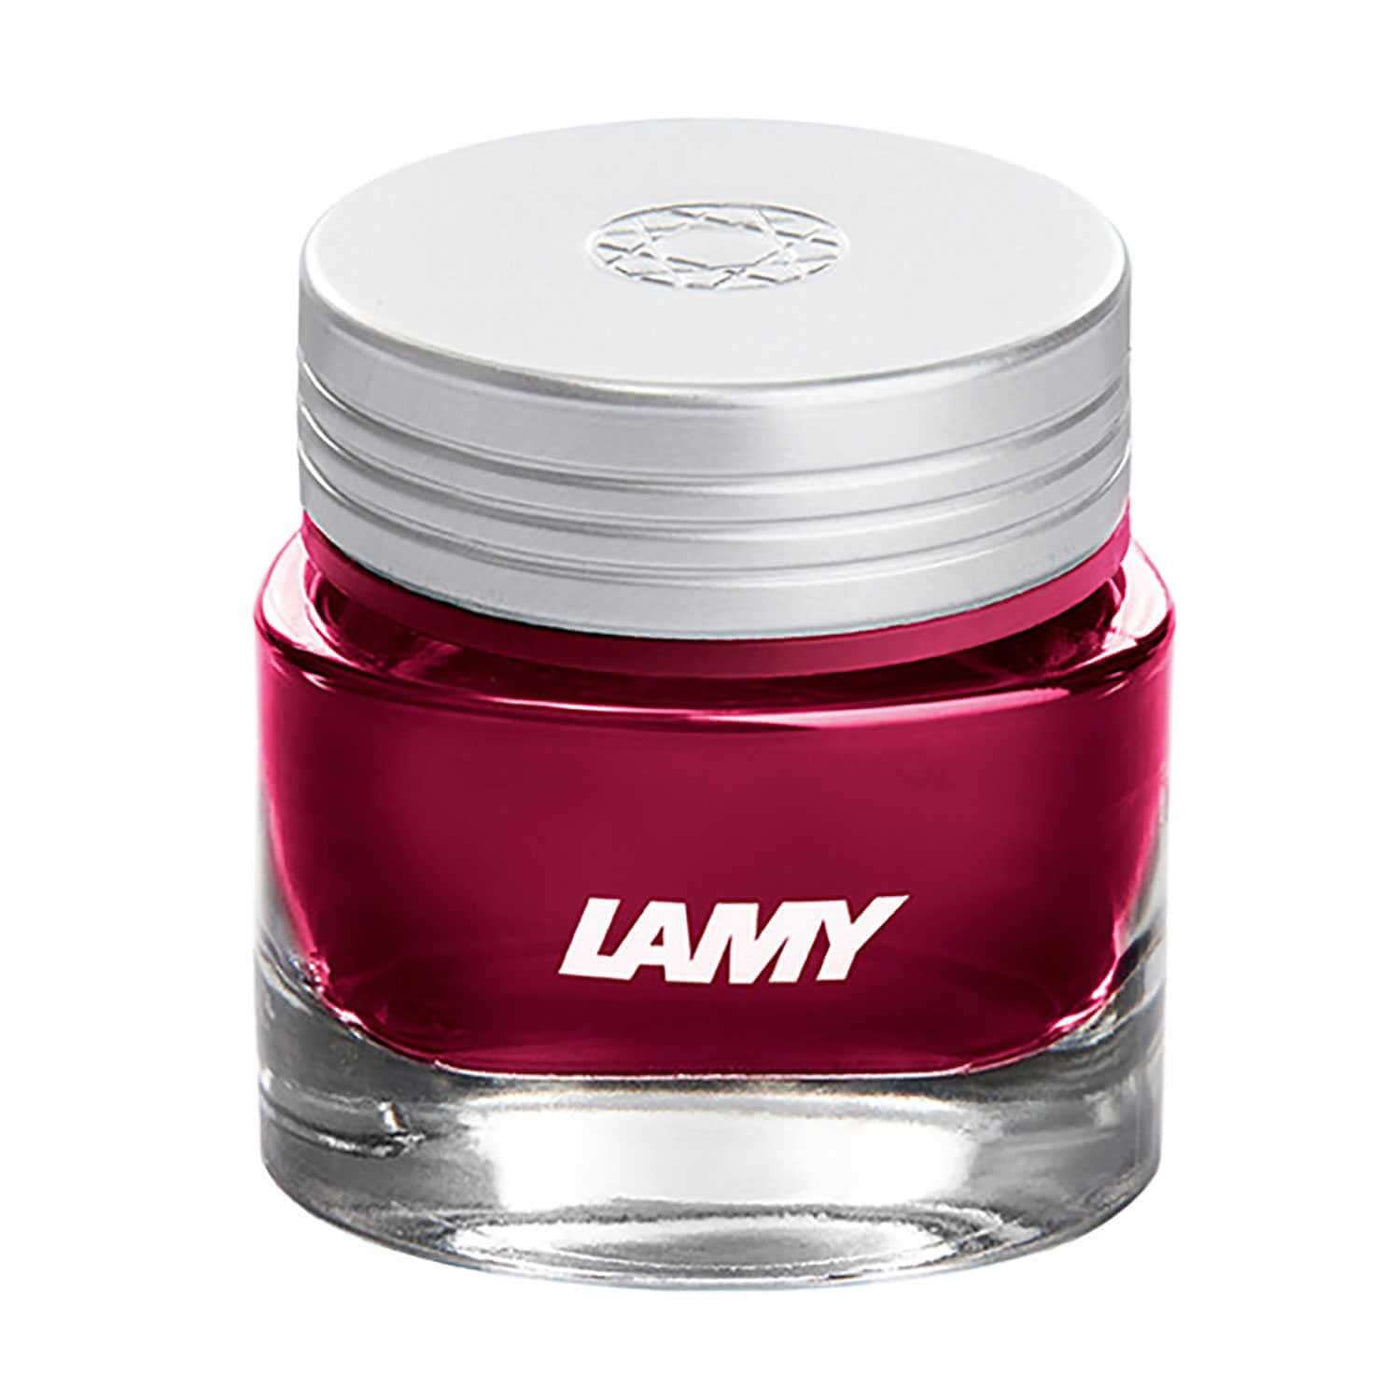 LAMY T53 CRYSTAL RUBY (WINE RED) INK BOTTLE - 30ML